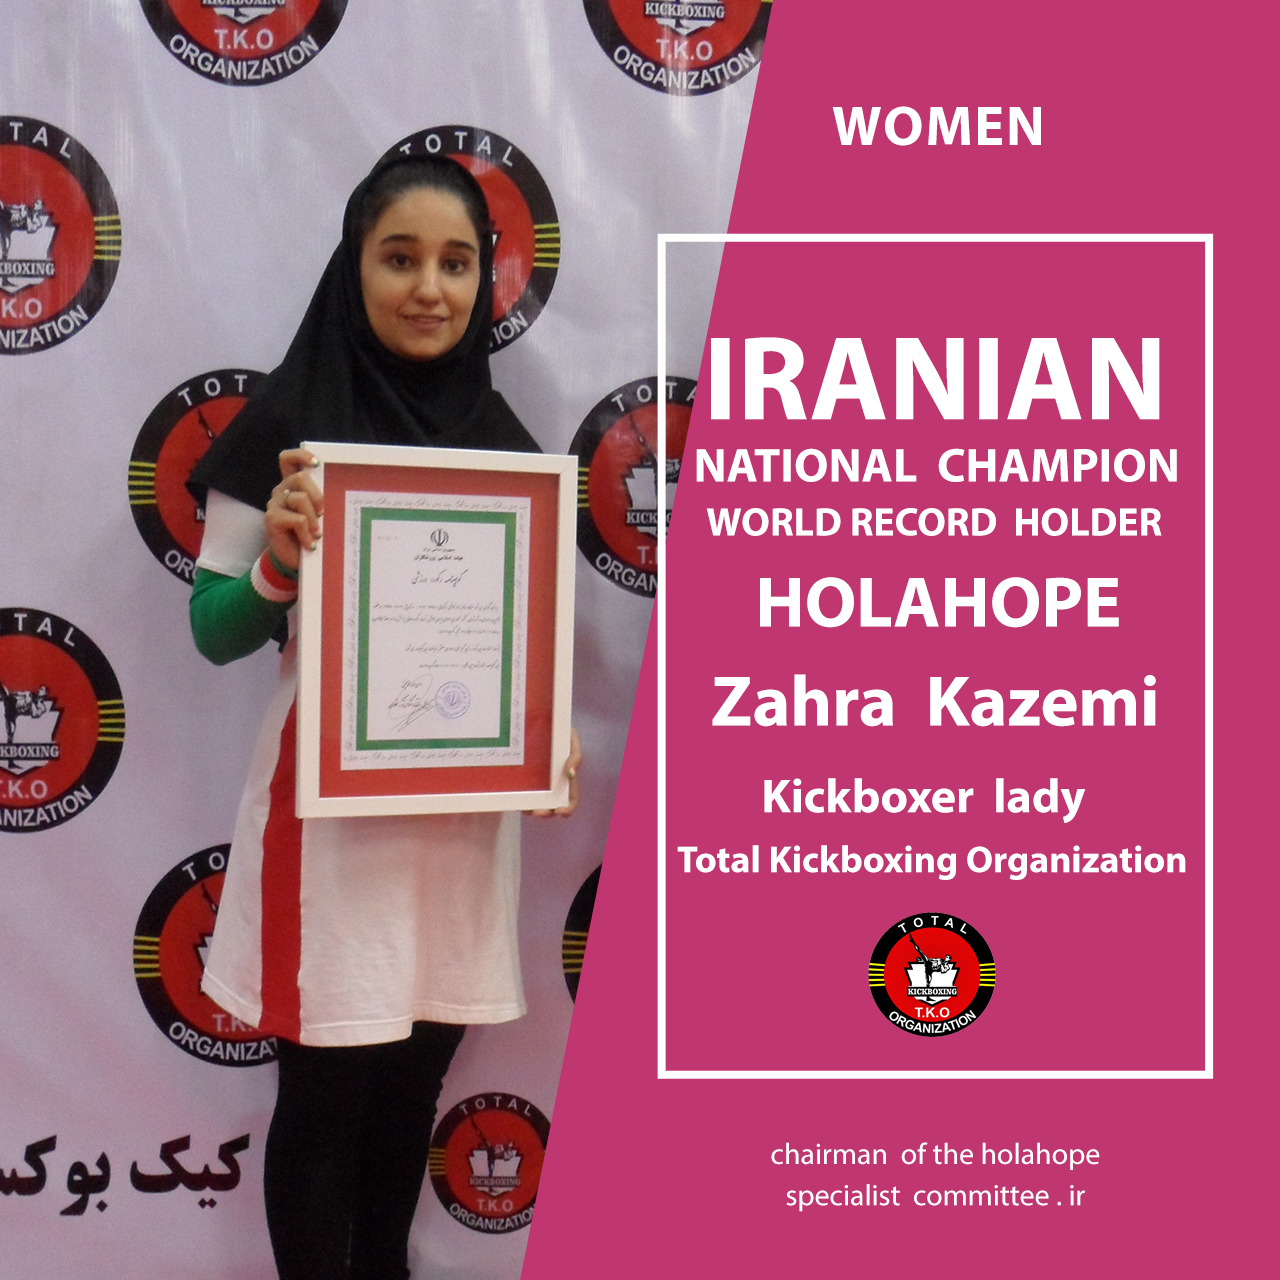 هولاهوپ زهرا کاظمی رکورد